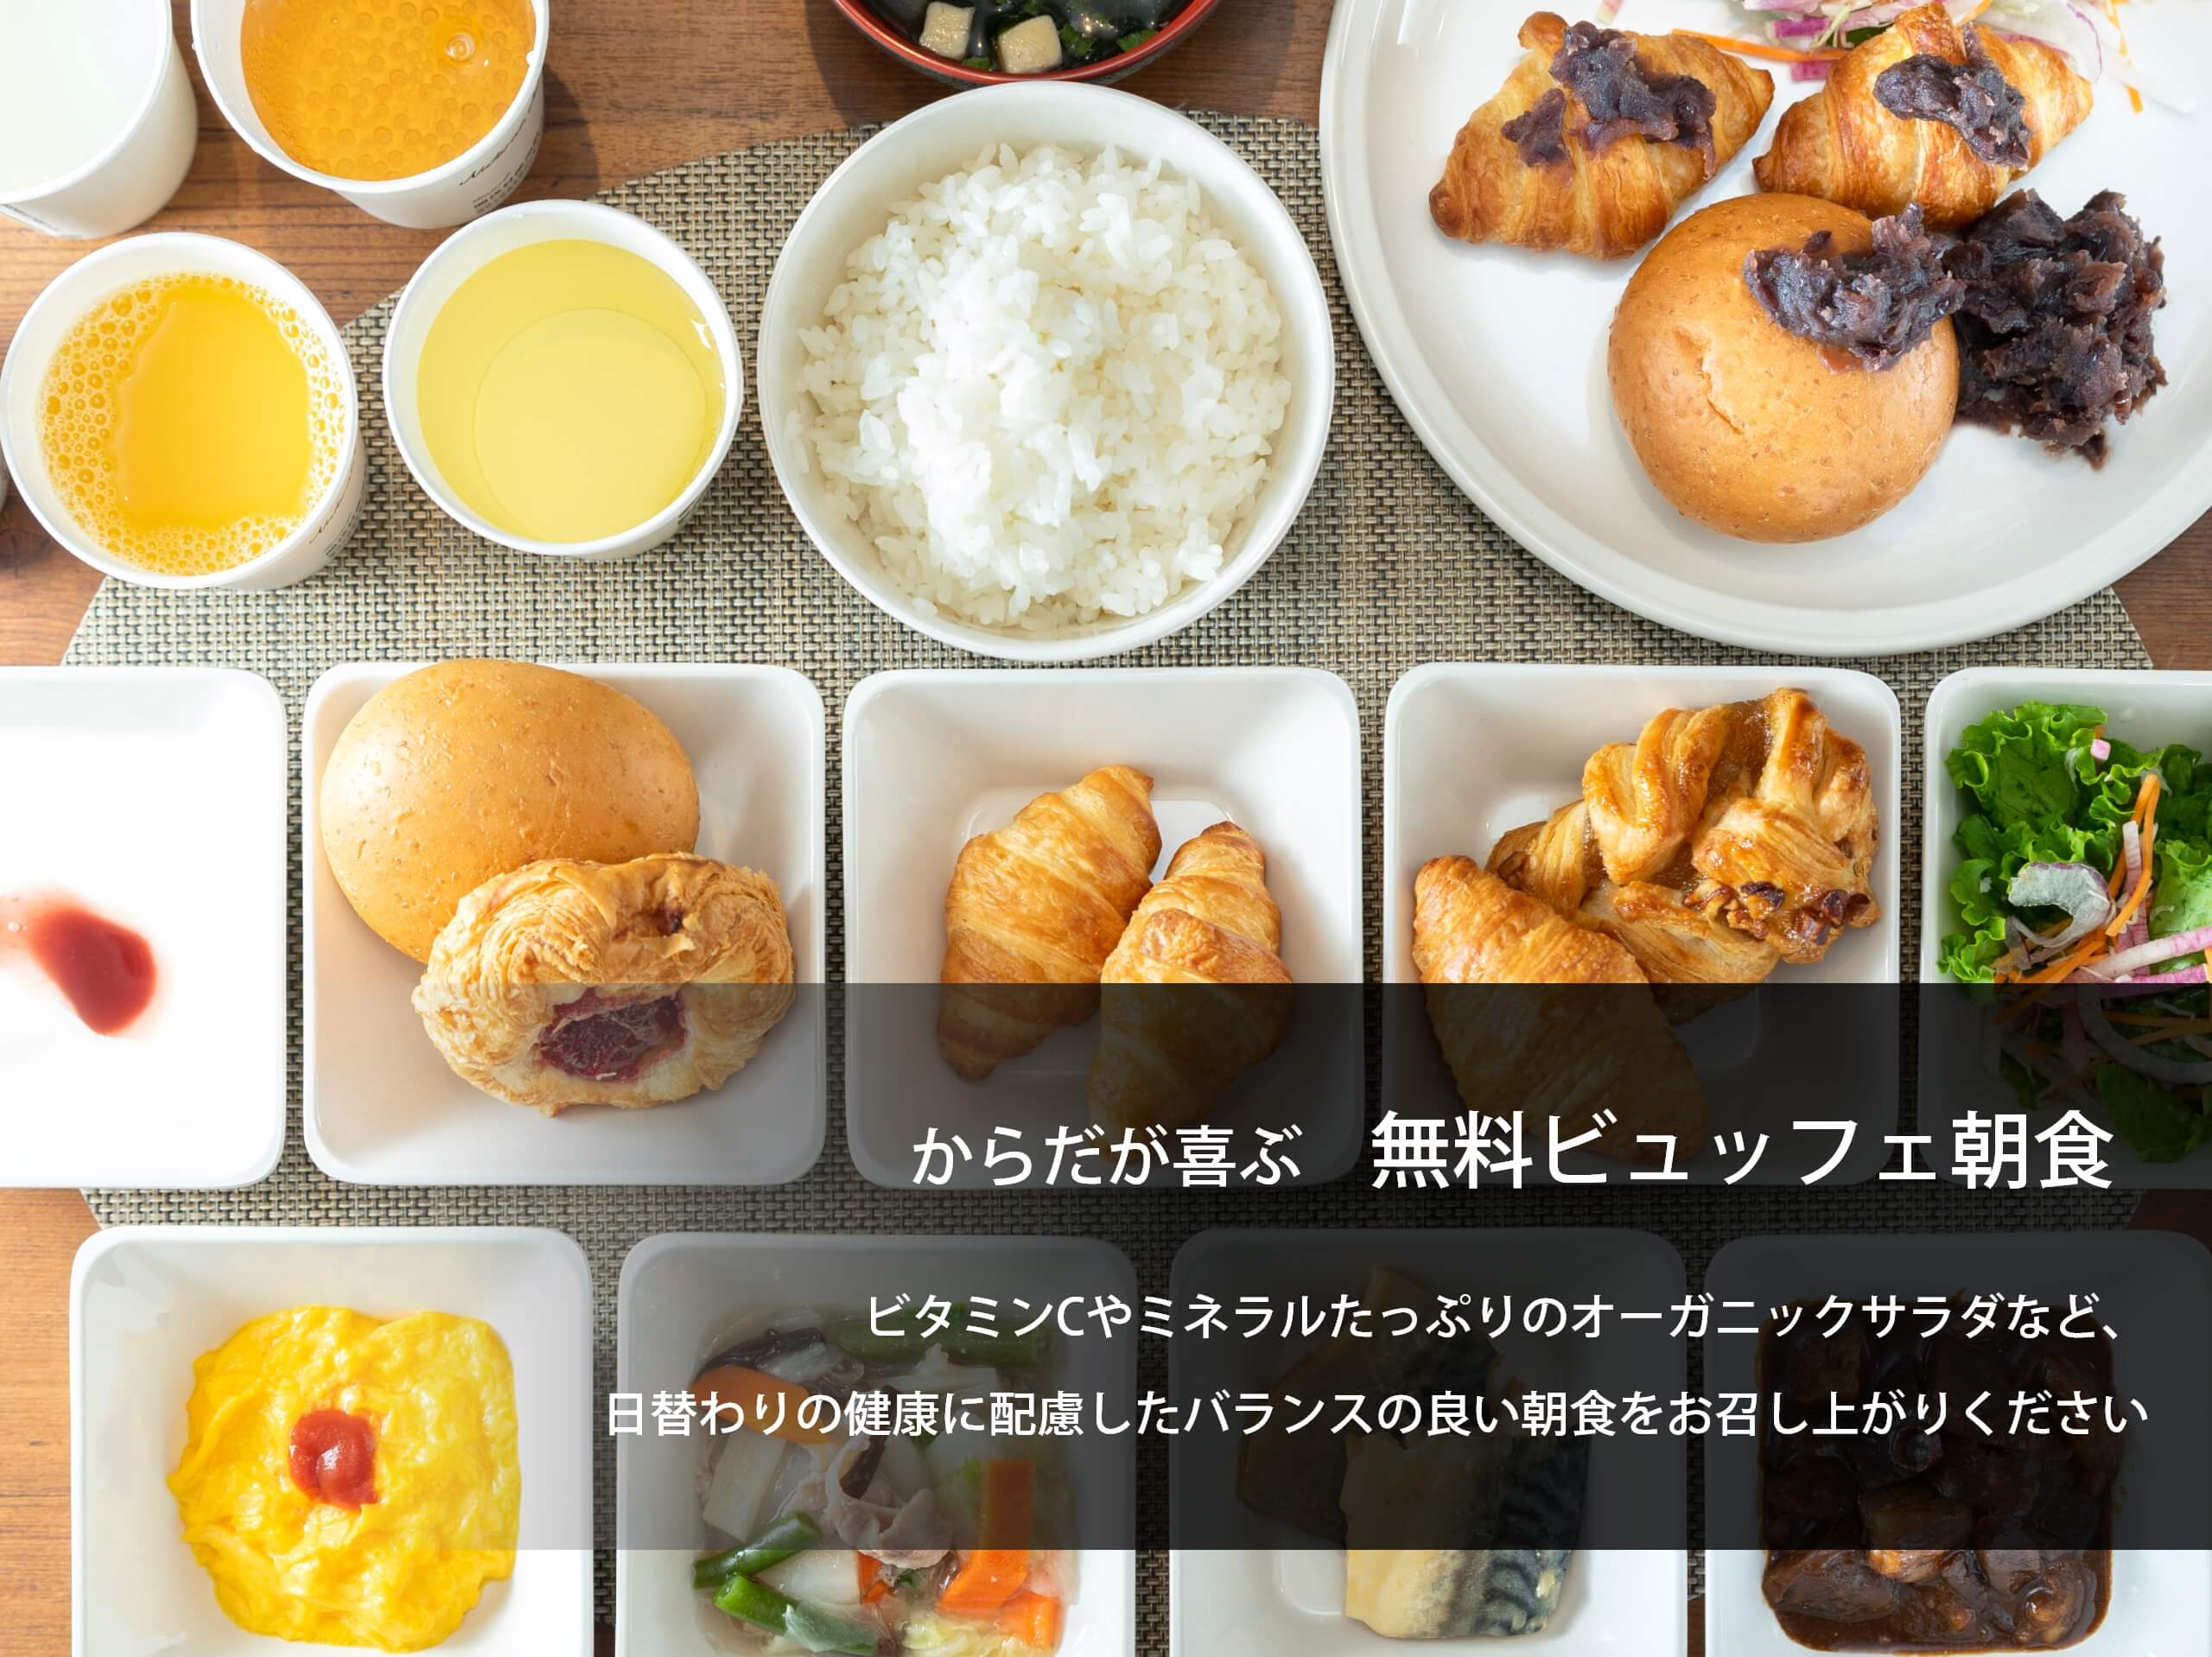 名古屋天然温泉超级饭店新干线出口 超级酒店